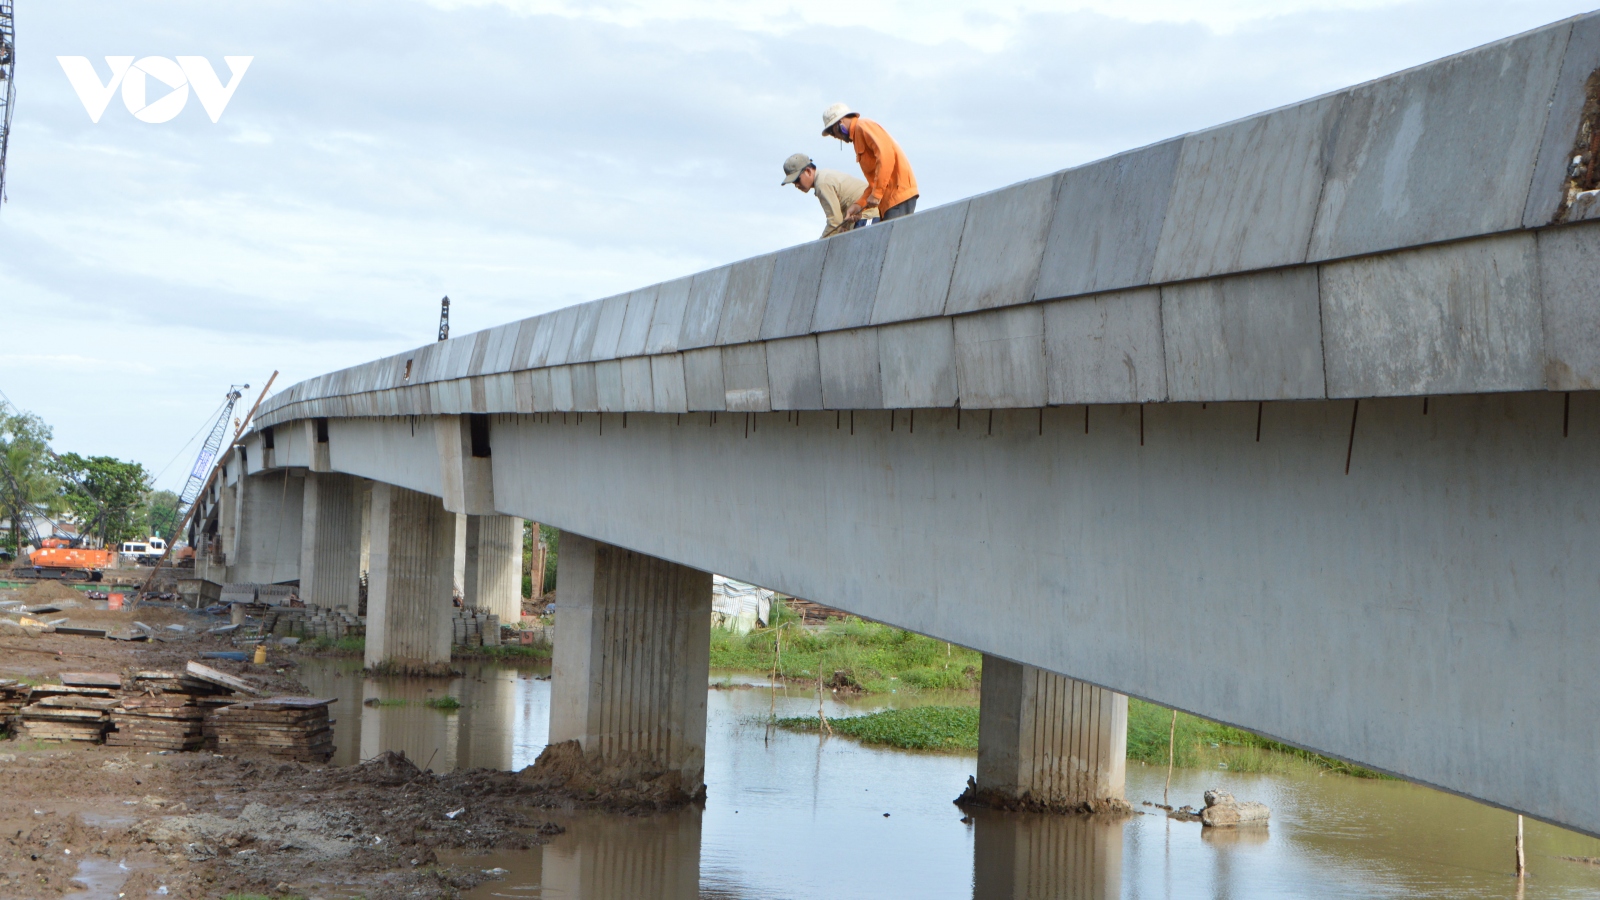 Hợp long cầu Mạc Đĩnh Chi kết nối TP Sóc Trăng với huyện Trần Đề